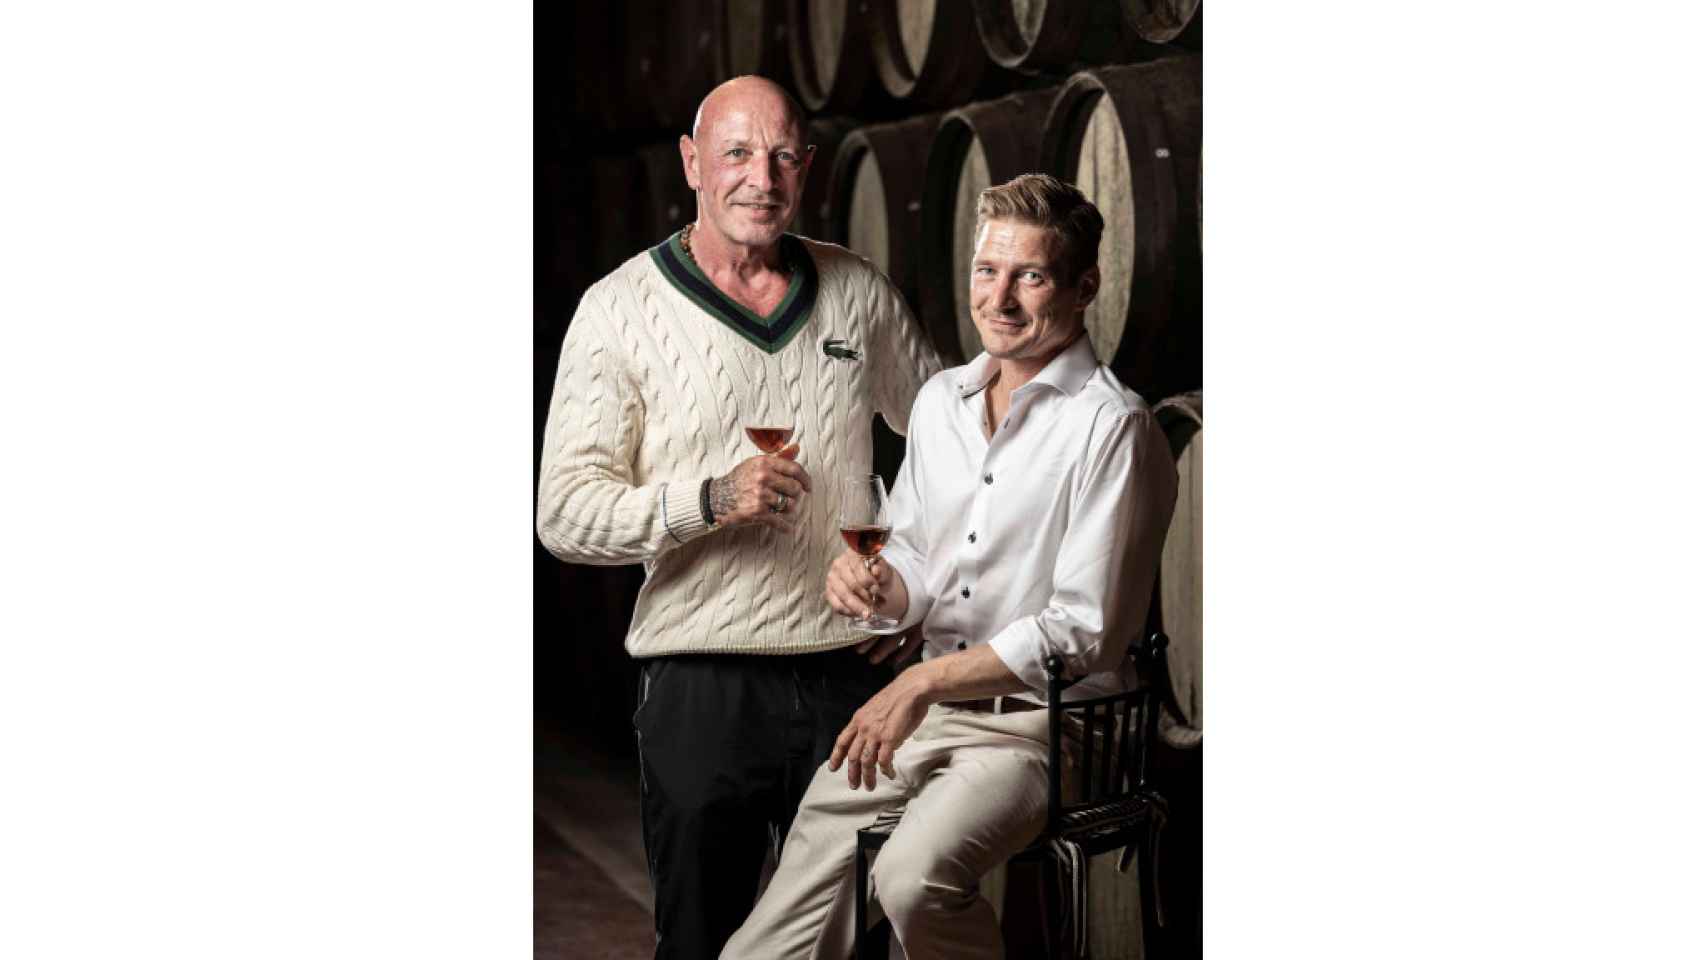 El chef Allan Schultz y el sumiller Alexander Berntsen, del restaurante danés Parsley Salon